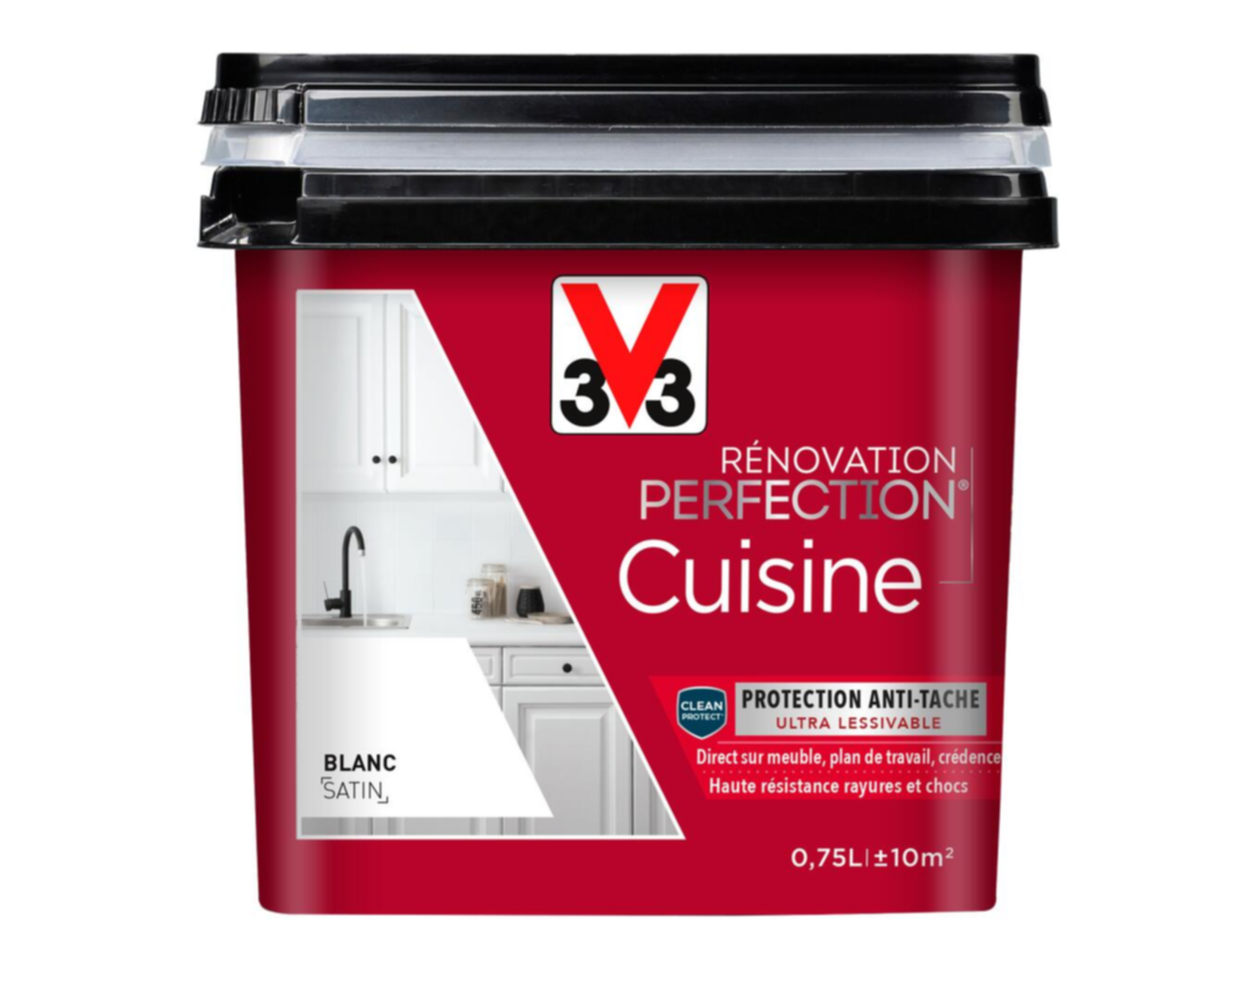 Peinture rénovation cuisine Perfection blanc satin 0,75l - V33